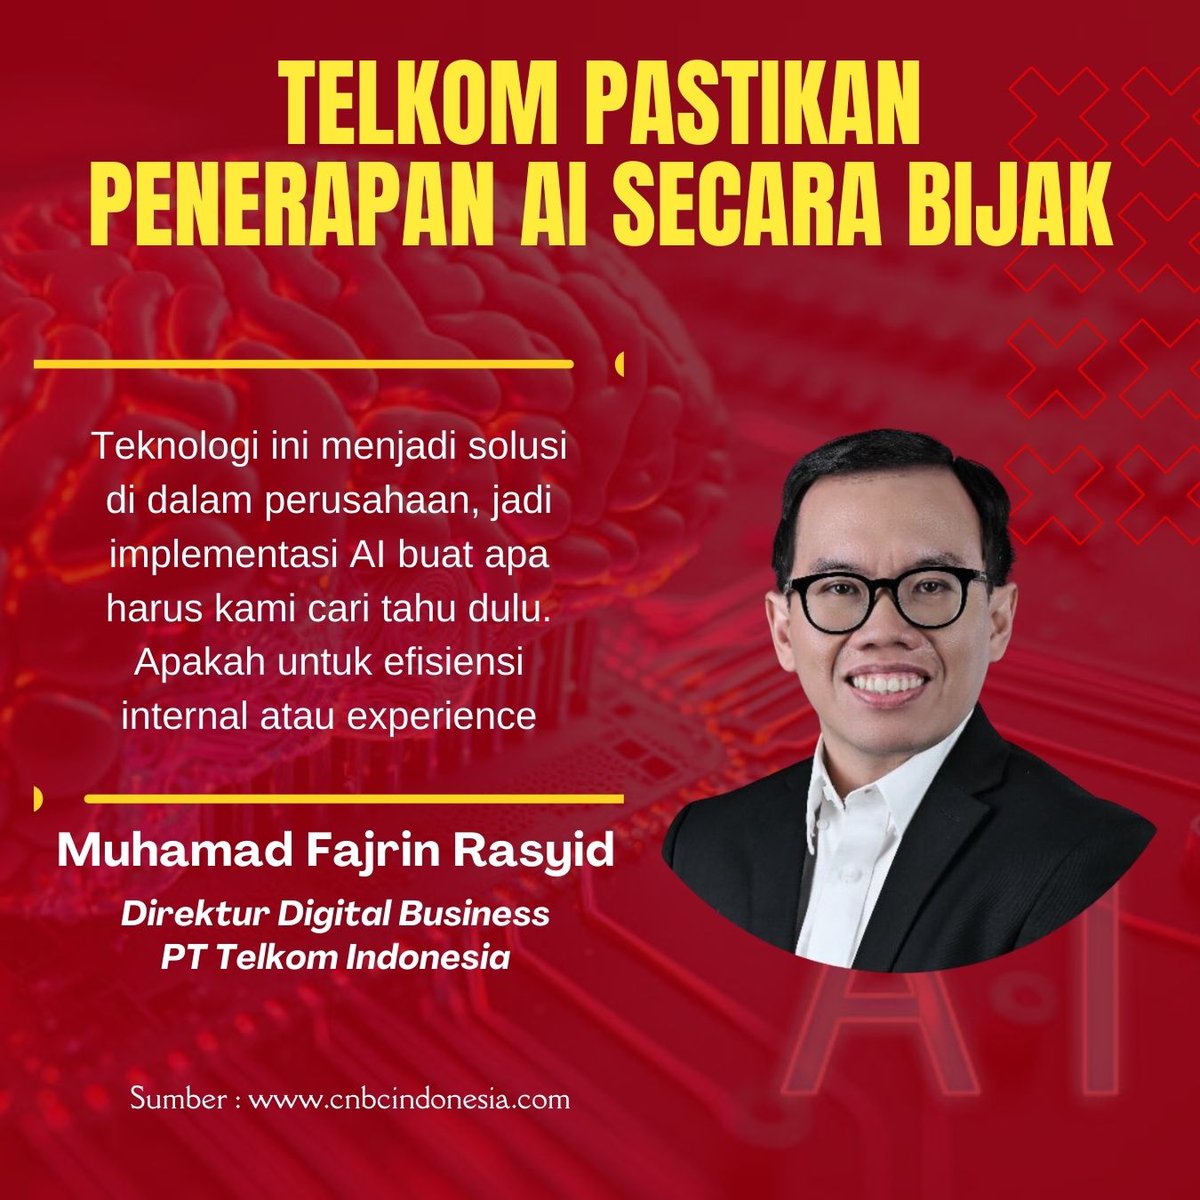 Update BUMN hari ini!
Direktur DB PT Telkom Indonesia Muhammad Fajrin Rasyid ingin menggunakan AI dengan lebih bijak untuk kemajuan Telkom Indonesia.

#BeritaBUMN #Kabarhariini #BUMN #TelkomIndonesia #Telkom #ElevatingYourFuture #KabarBUMN #ErickThohir #AI 
Fyodor INFJ